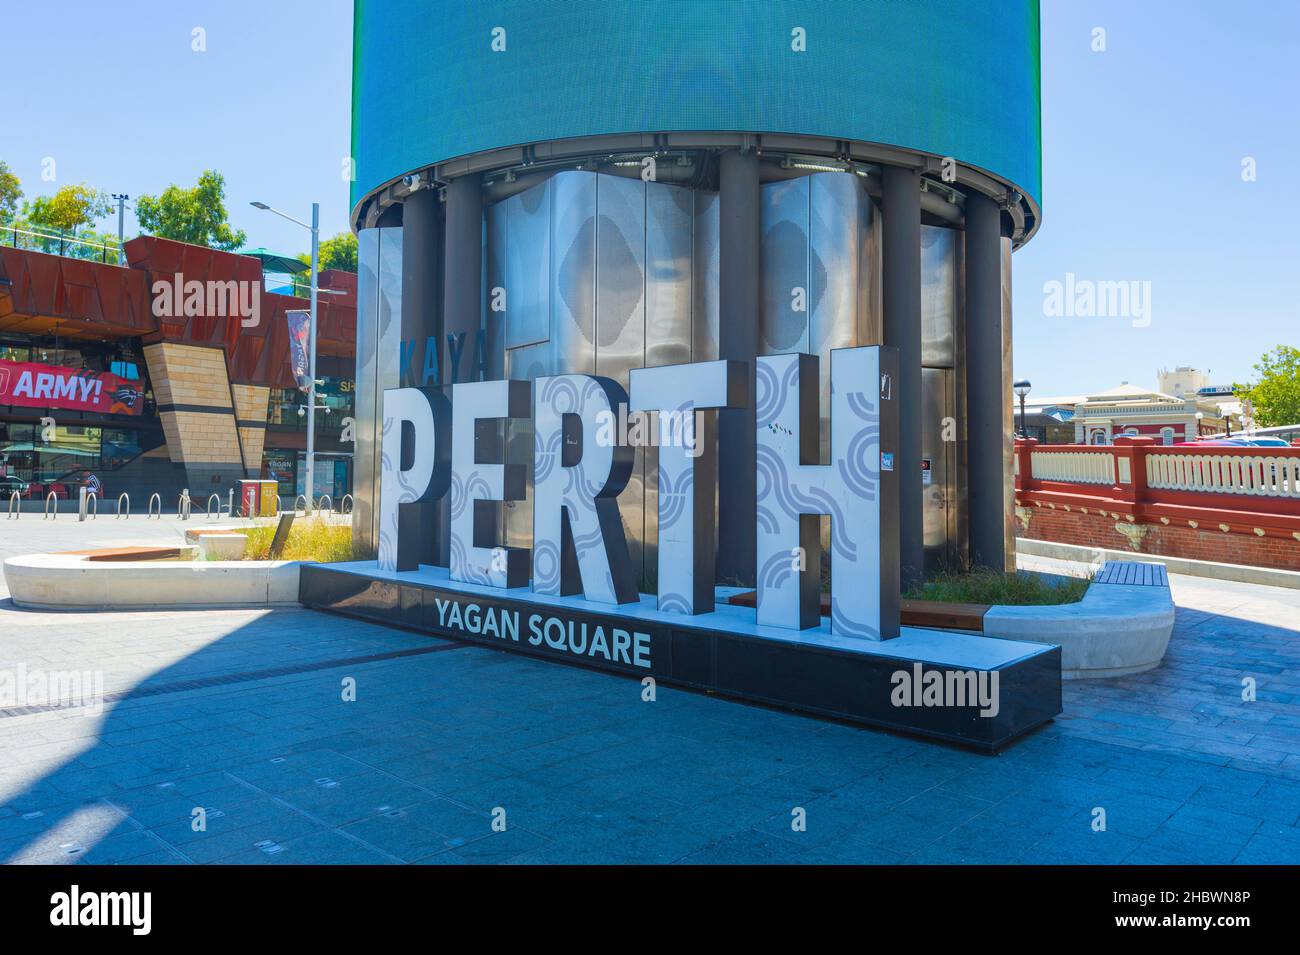 Perth signe à Yagan Square, Perth Central Business District, Australie occidentale, WA, Australie Banque D'Images